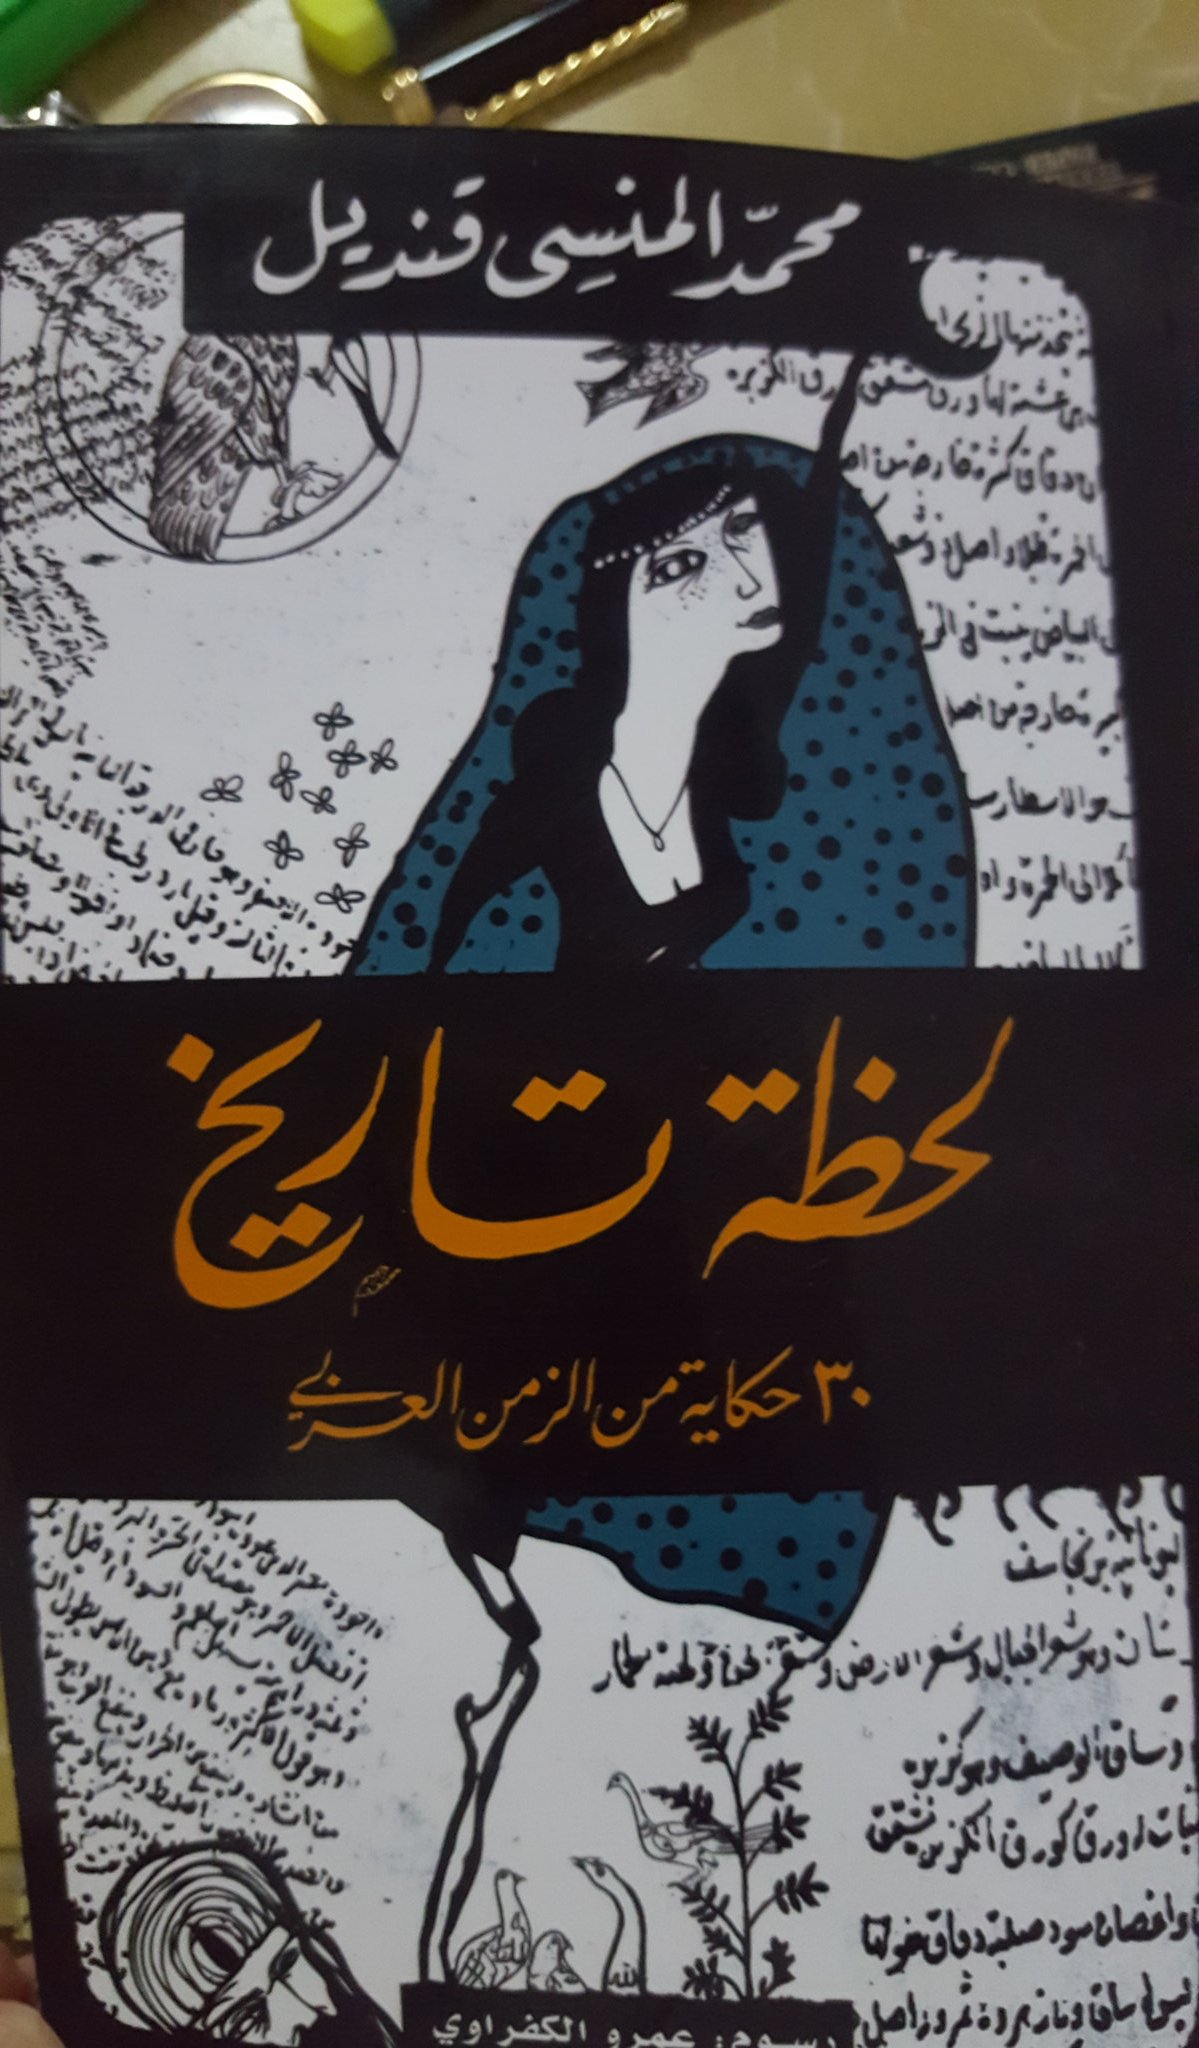 هيا نقرأ A Twitteren كتاب بين يديك كتاب قصص جميل لحظة تاريخ للمبدع محمد المنسي قنديل